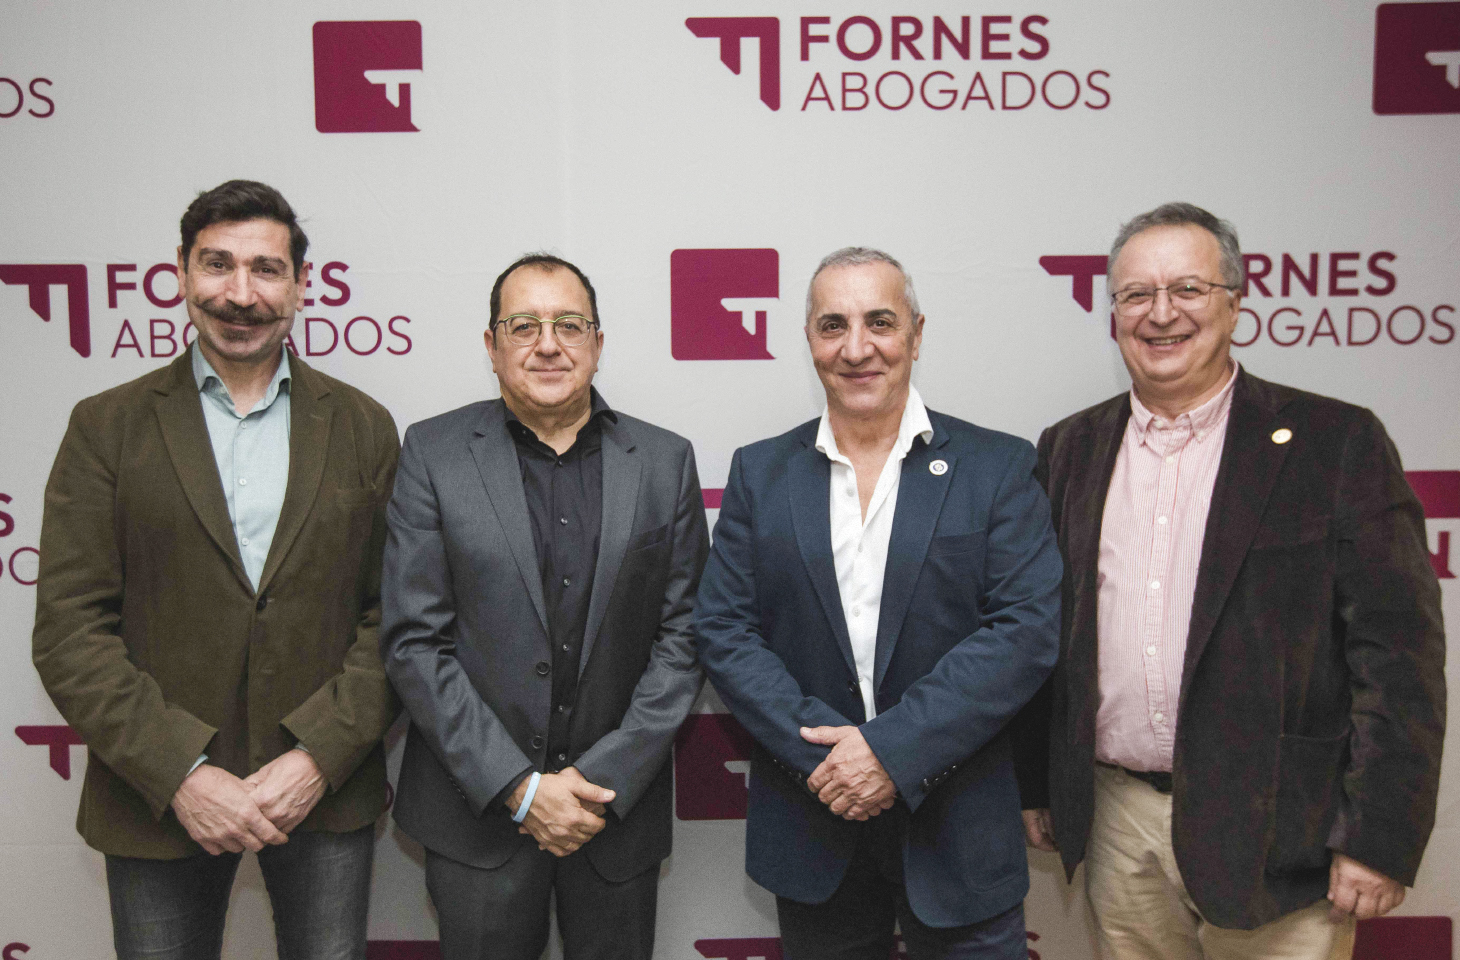 El decano del ICOFCV asiste a la presentación de la nueva marca corporativa y nueva sede en Valencia de Fornes Abogados